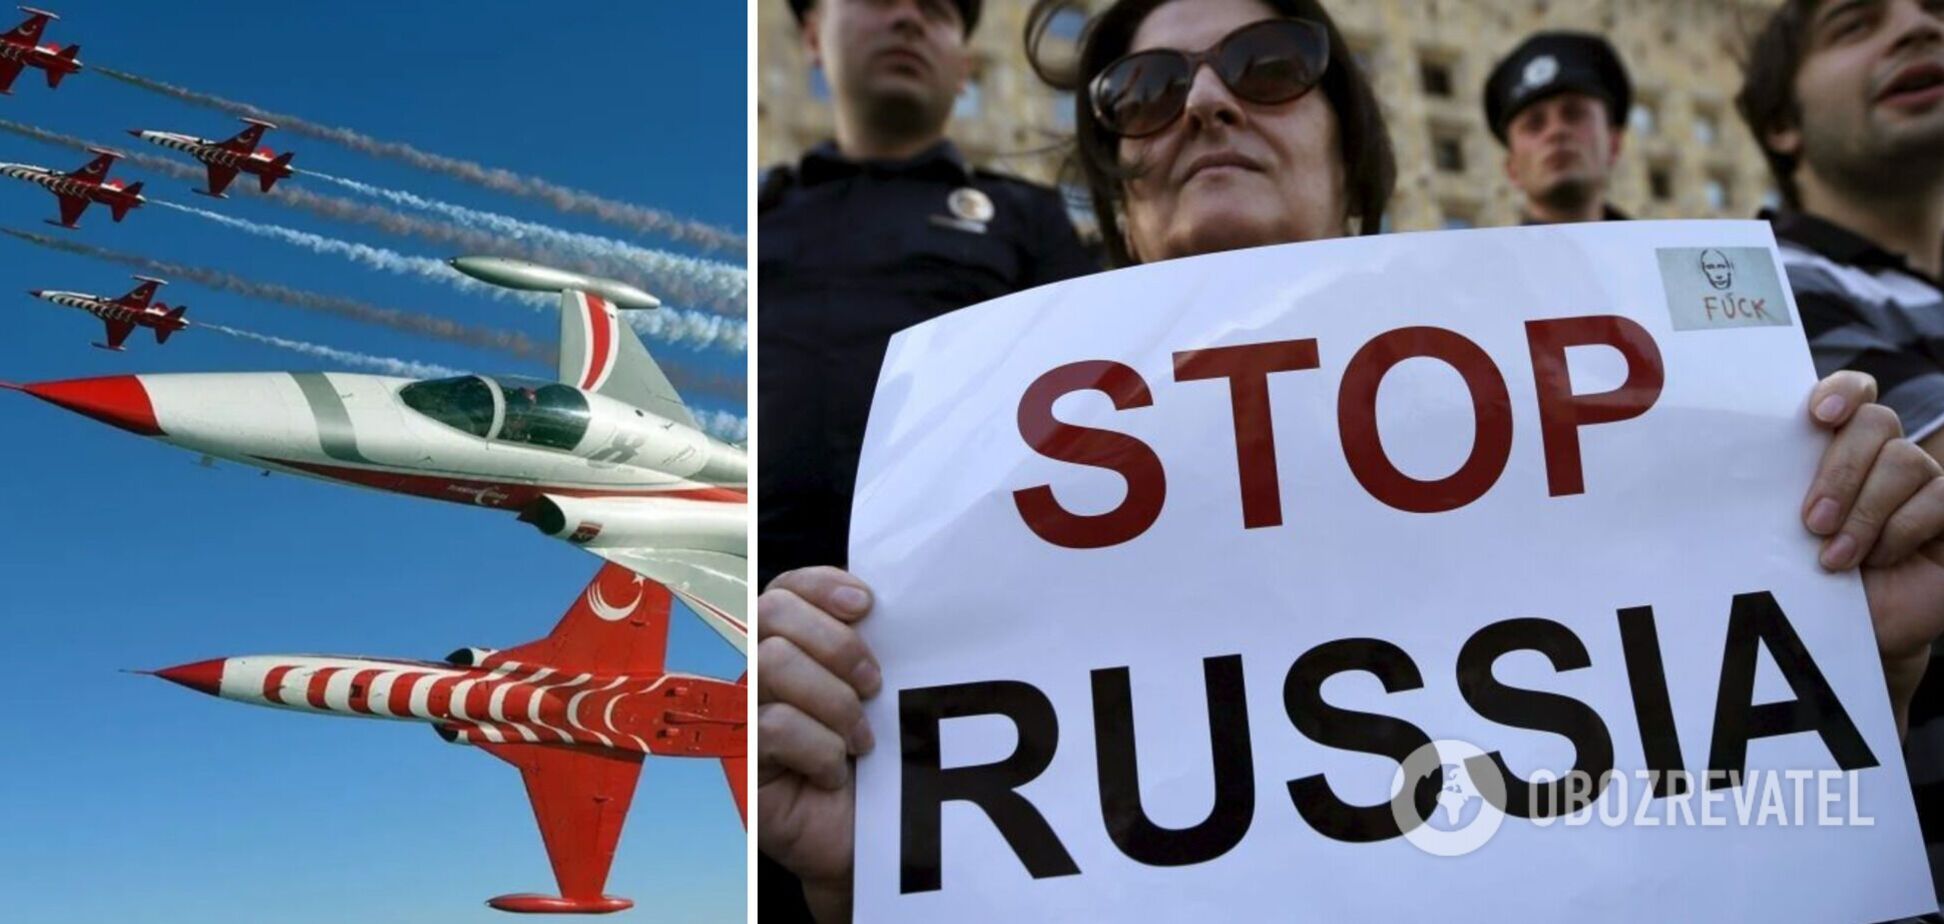 Членам российской делегации на Международном авиашоу в Турции советуют не говорить, что они из РФ. Документ